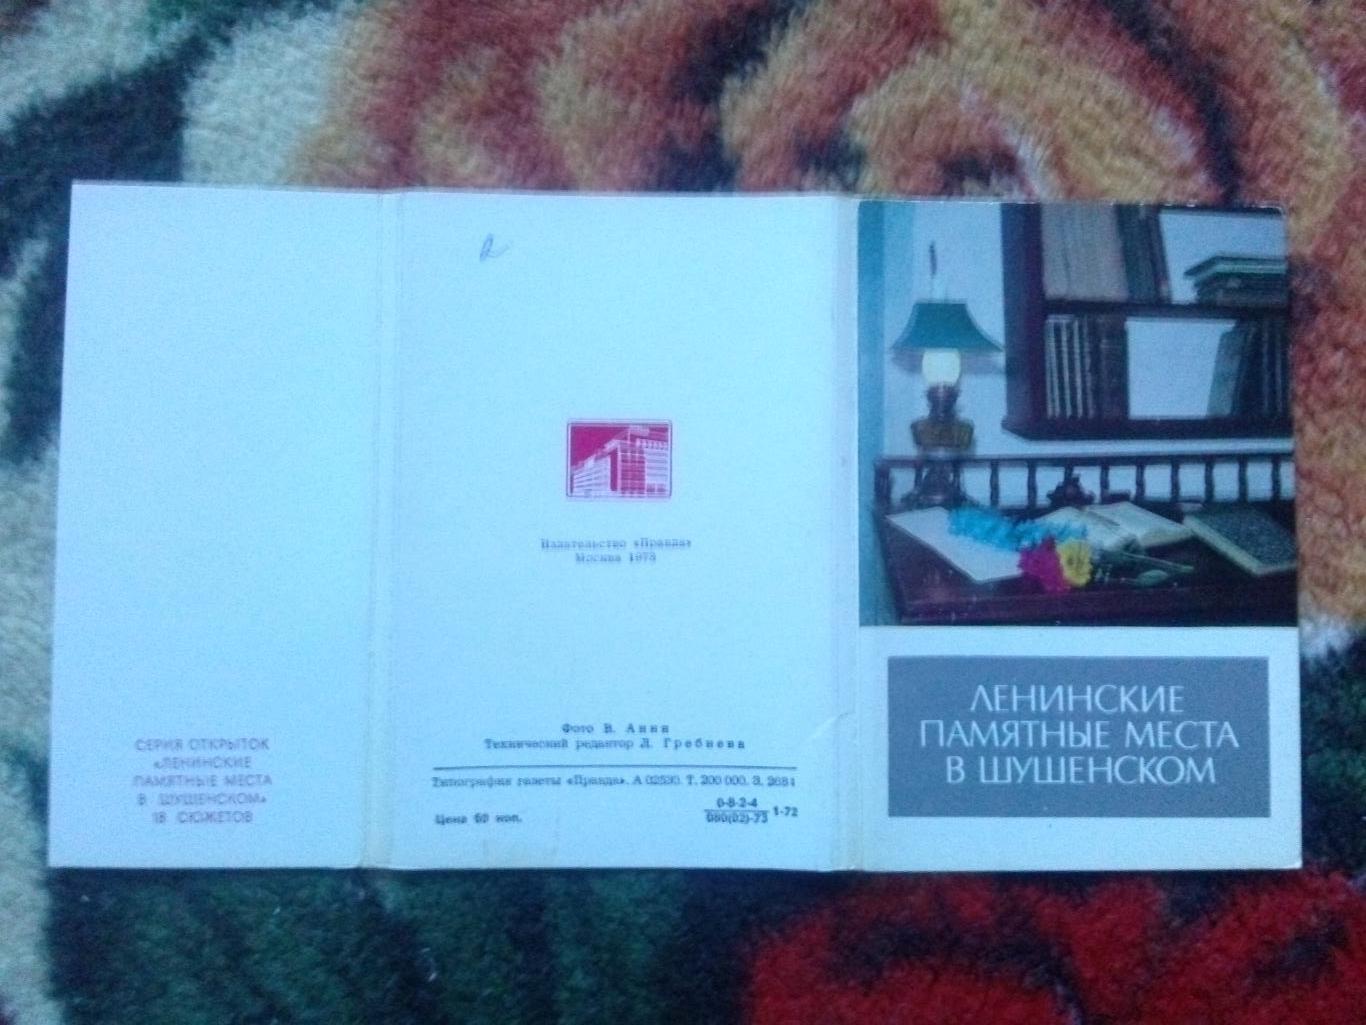 Ленинские памятные места в Шушенском 1973 г. полный набор - 18 открыток (идеал) 1